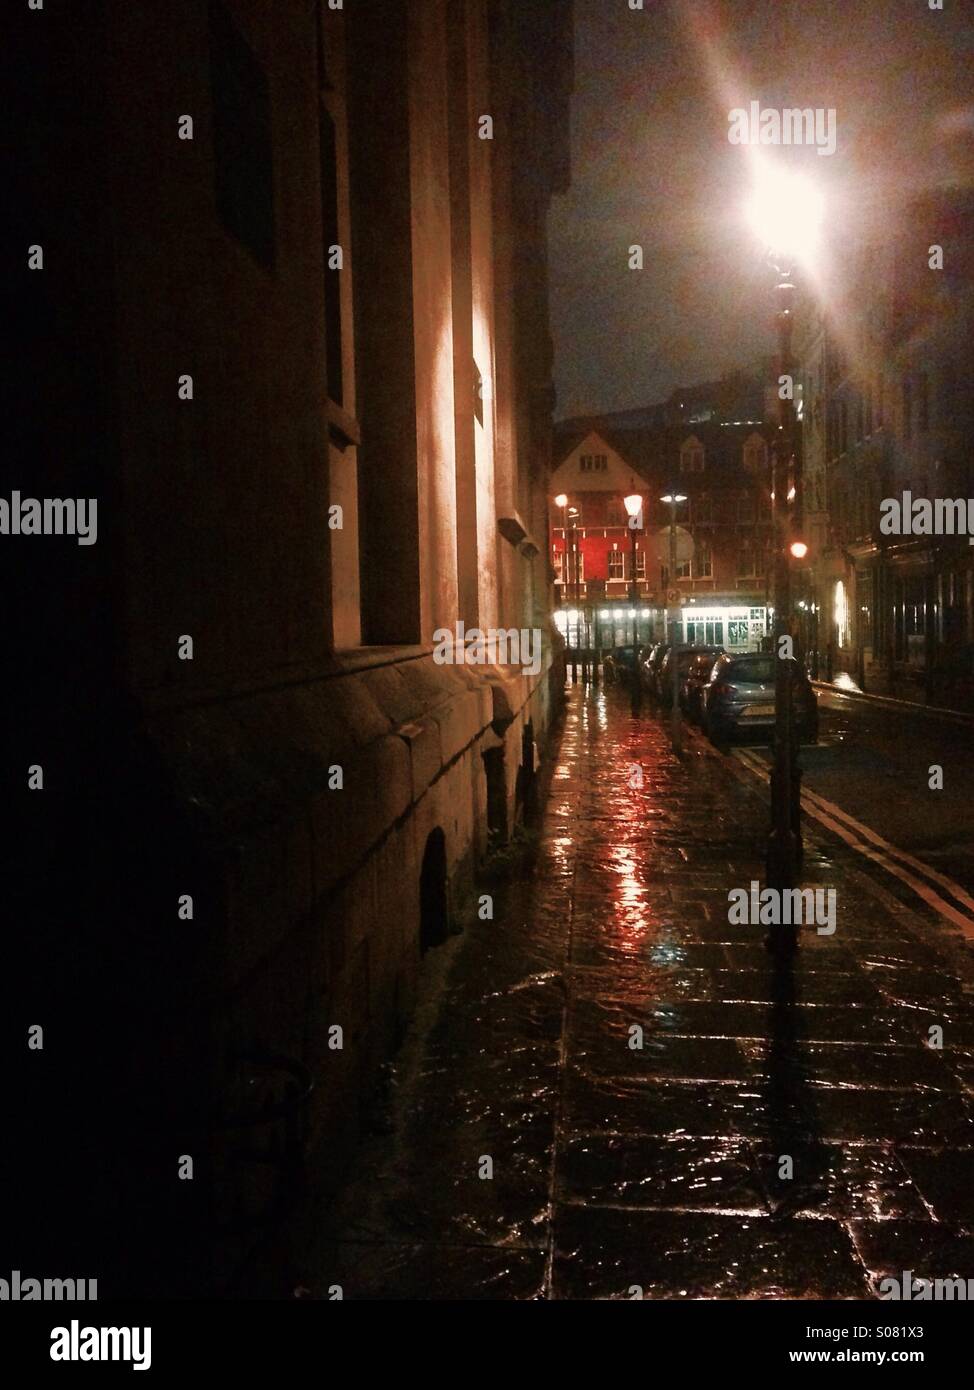 Il buio strade bagnate di Spitalfields con qualche illuminazione su la parete della chiesa e il vecchio mercato rosso in background in una fredda notte tranquilla per strada-luce. Foto Stock